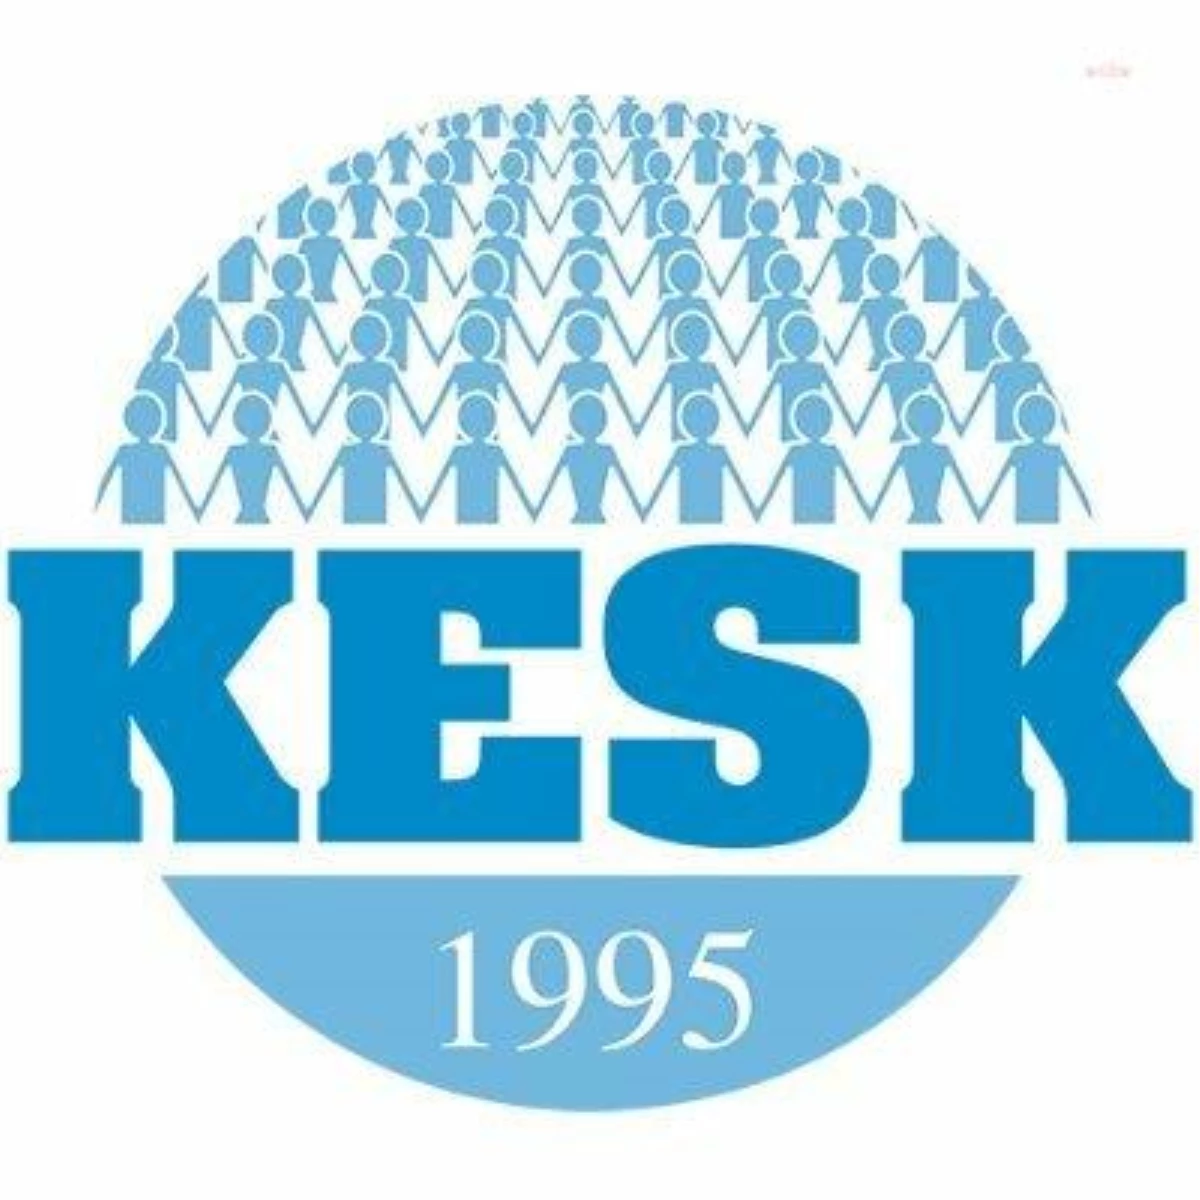 KESK, 28 Mayıs seçimlerinin kazananı yoktur açıklaması yaptı